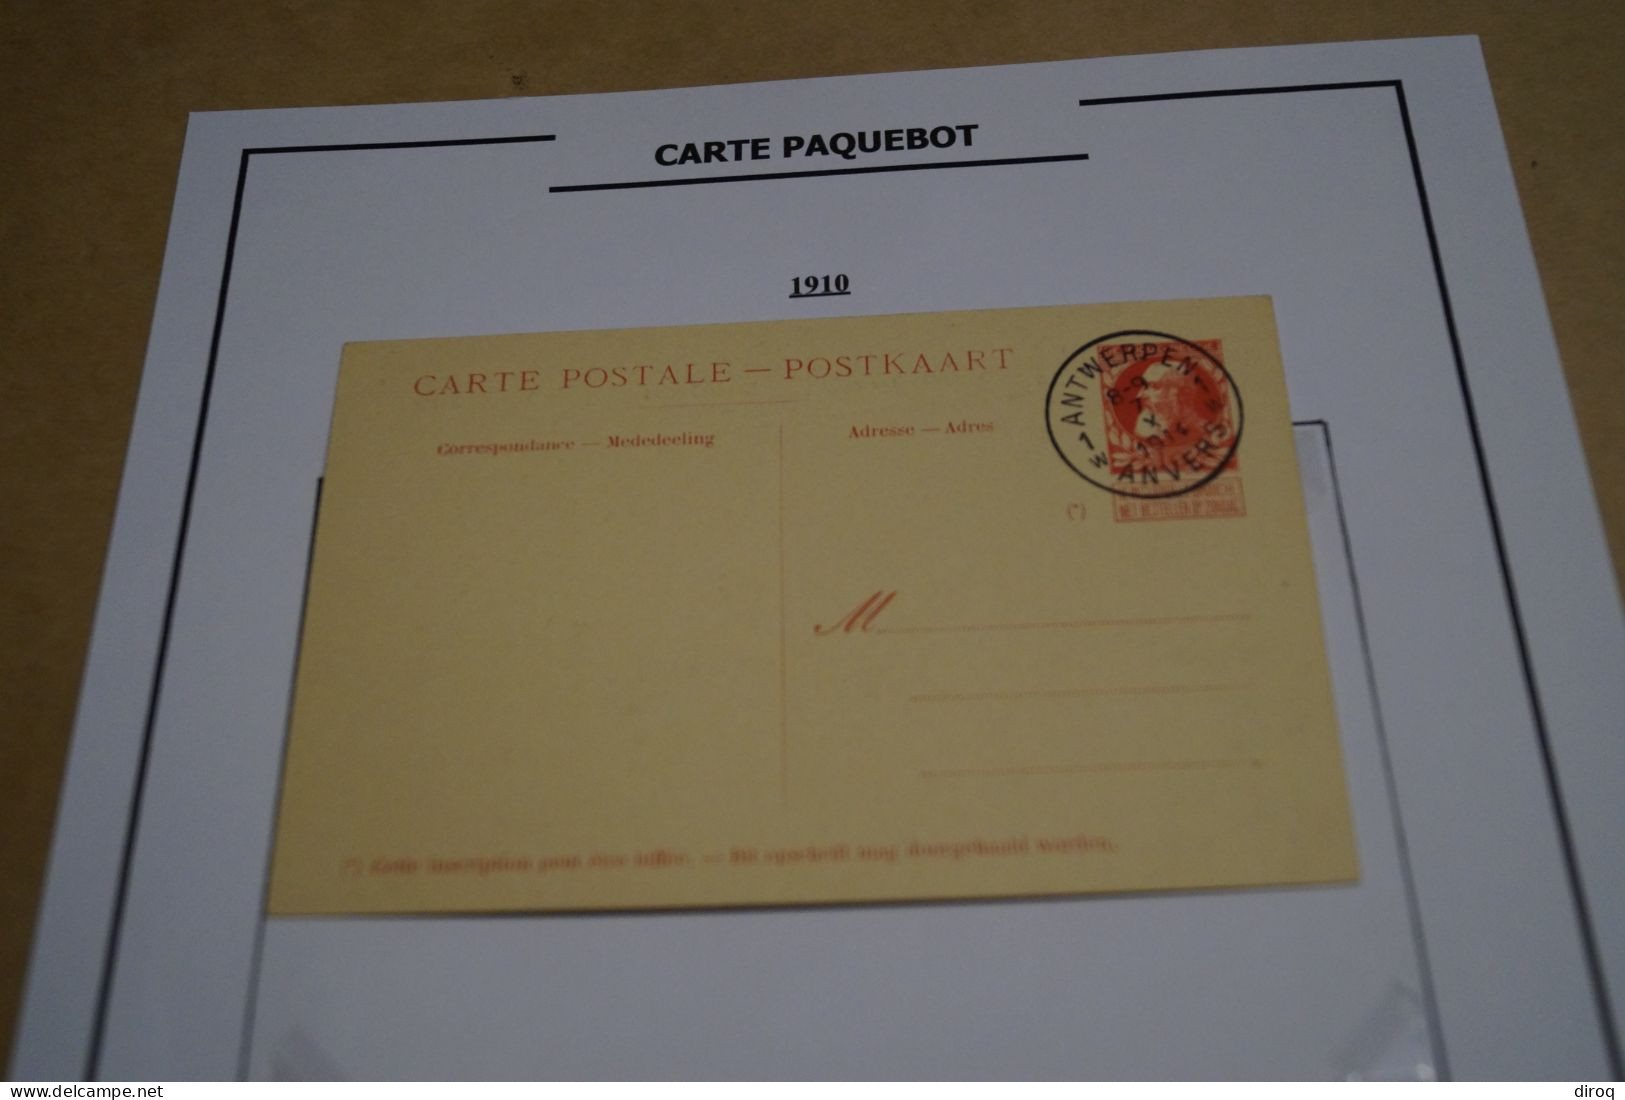 Carte Paquebot 1910, Le Jan Breydel,timbre Oblitéré 10 C. Rouge,grosse Barbe ,état Neuf Pour Collection - Dampfer